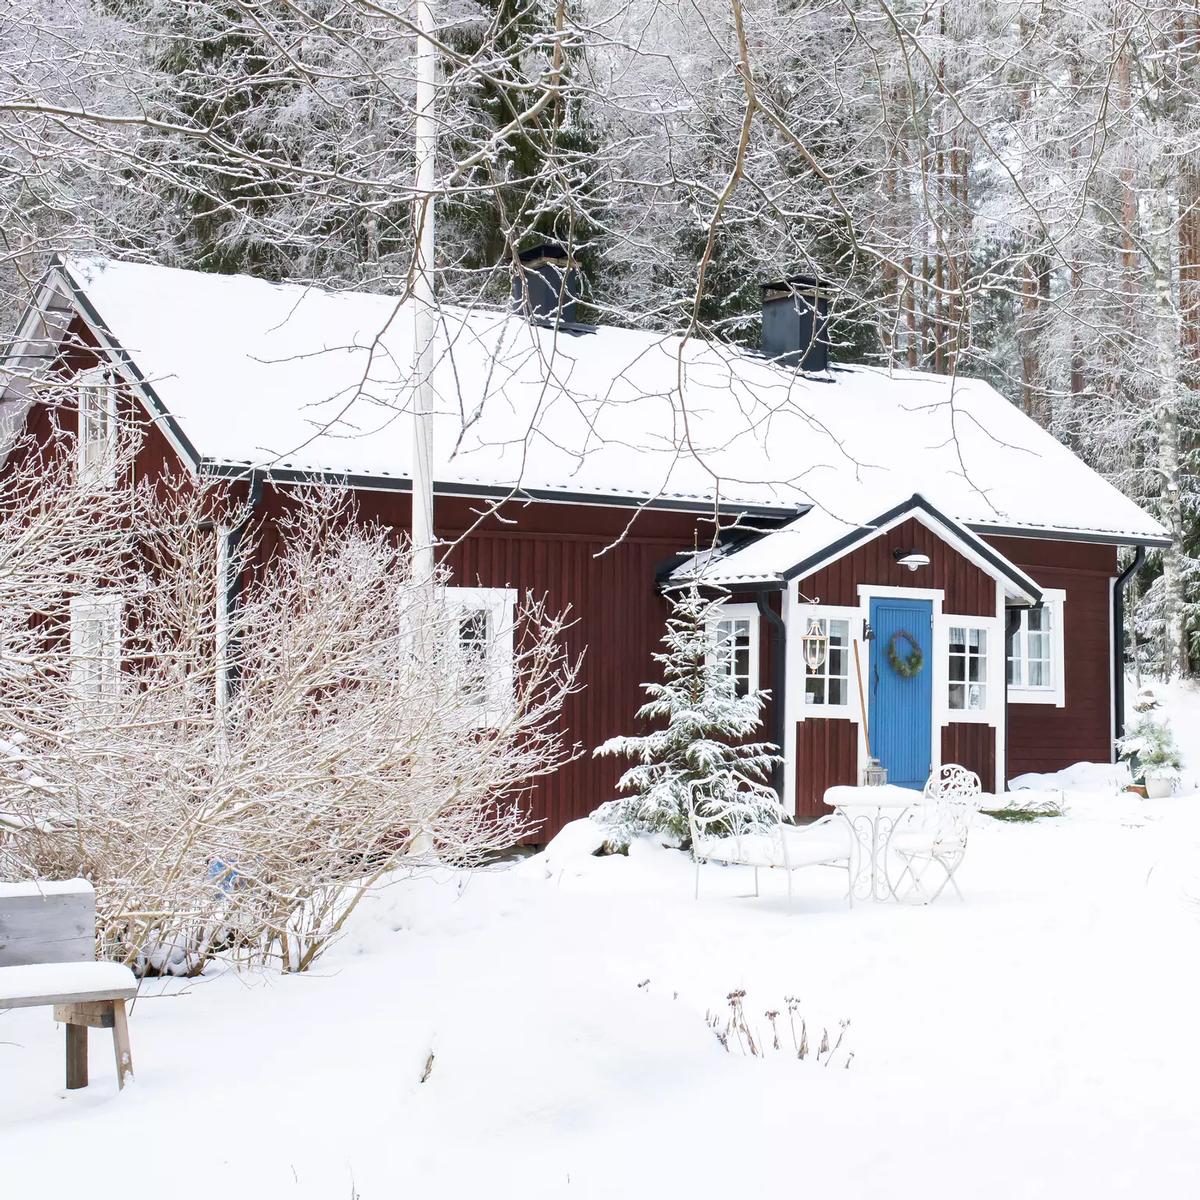 Так домик-ферма выглядит сегодня. Бордовый фасад в комбинации с голубой дверью смотрится очень атмосферно на фоне белого снега